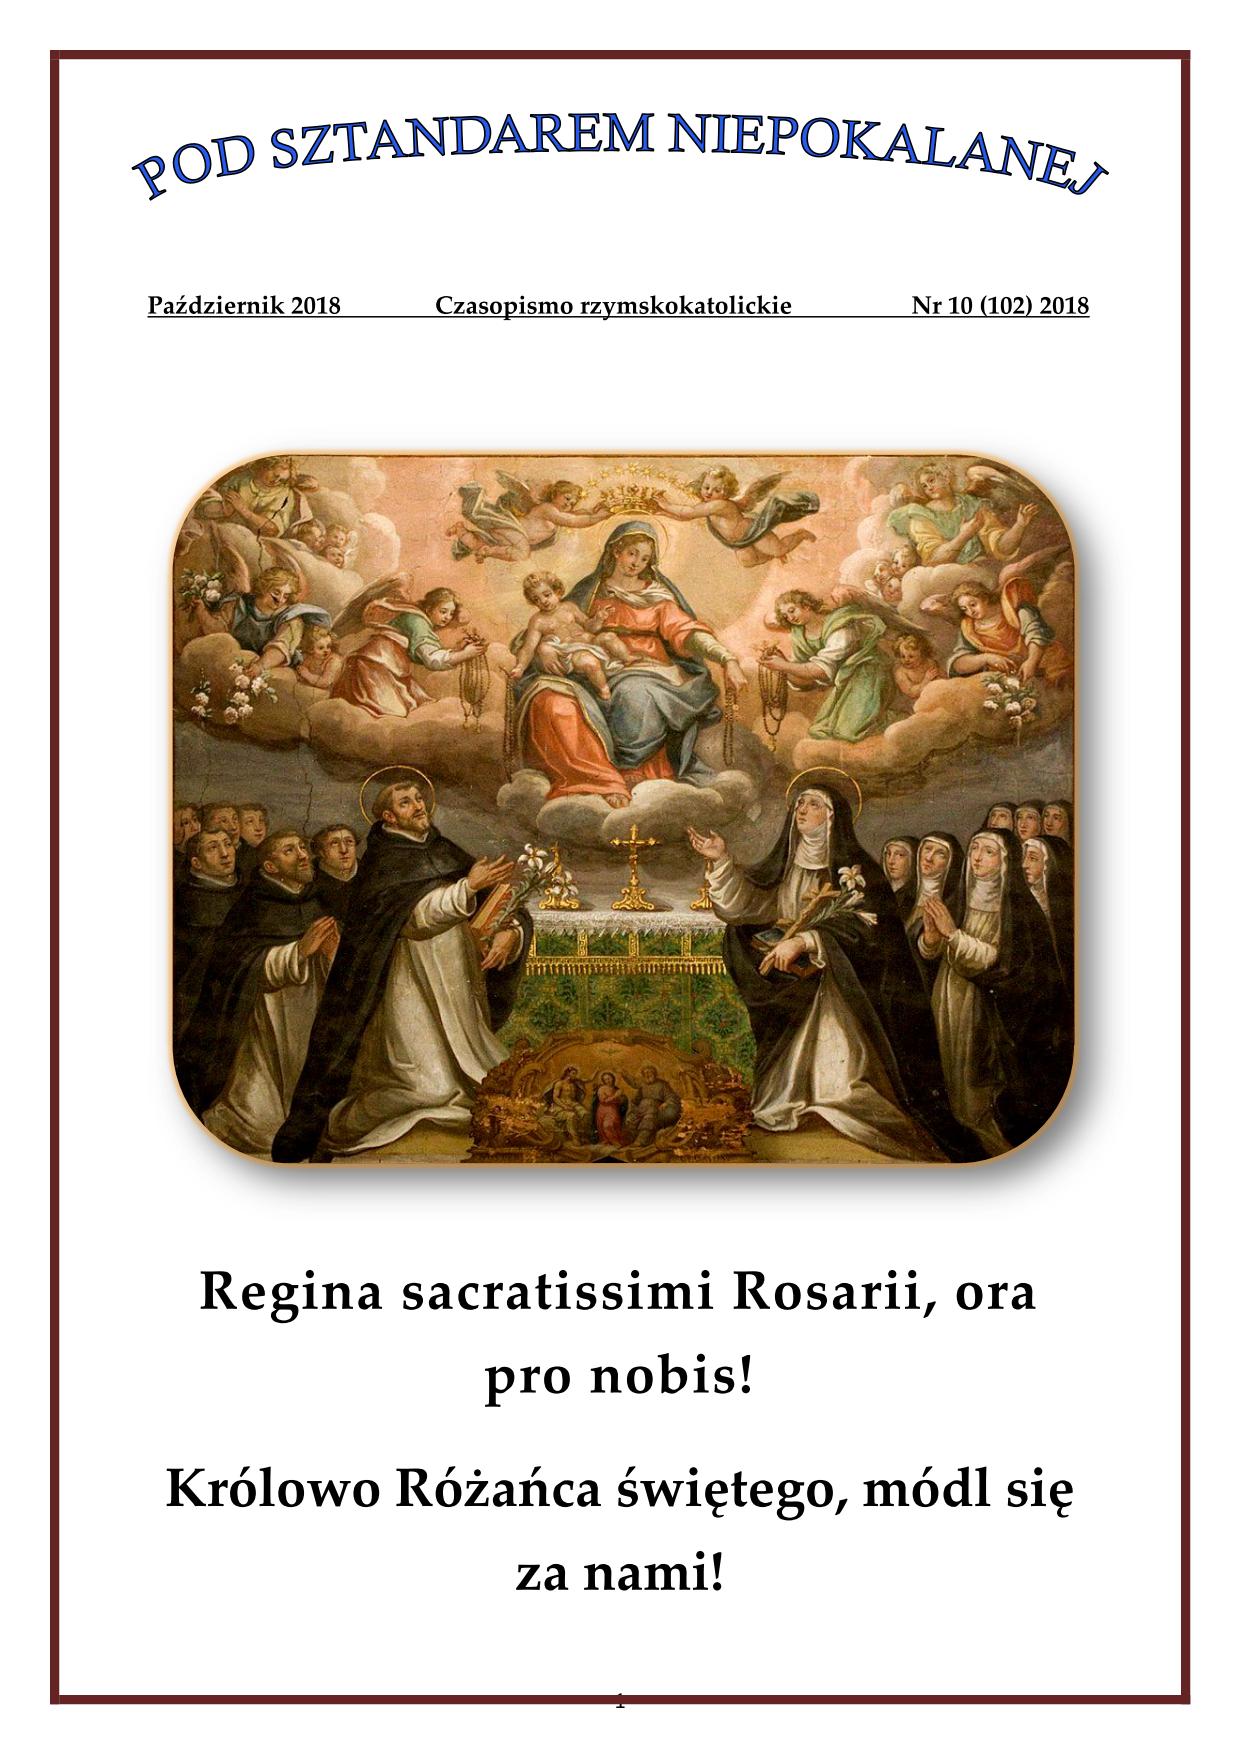 "Pod sztandarem Niepokalanej". Nr 102. Październik 2018. Czasopismo rzymskokatolickie.